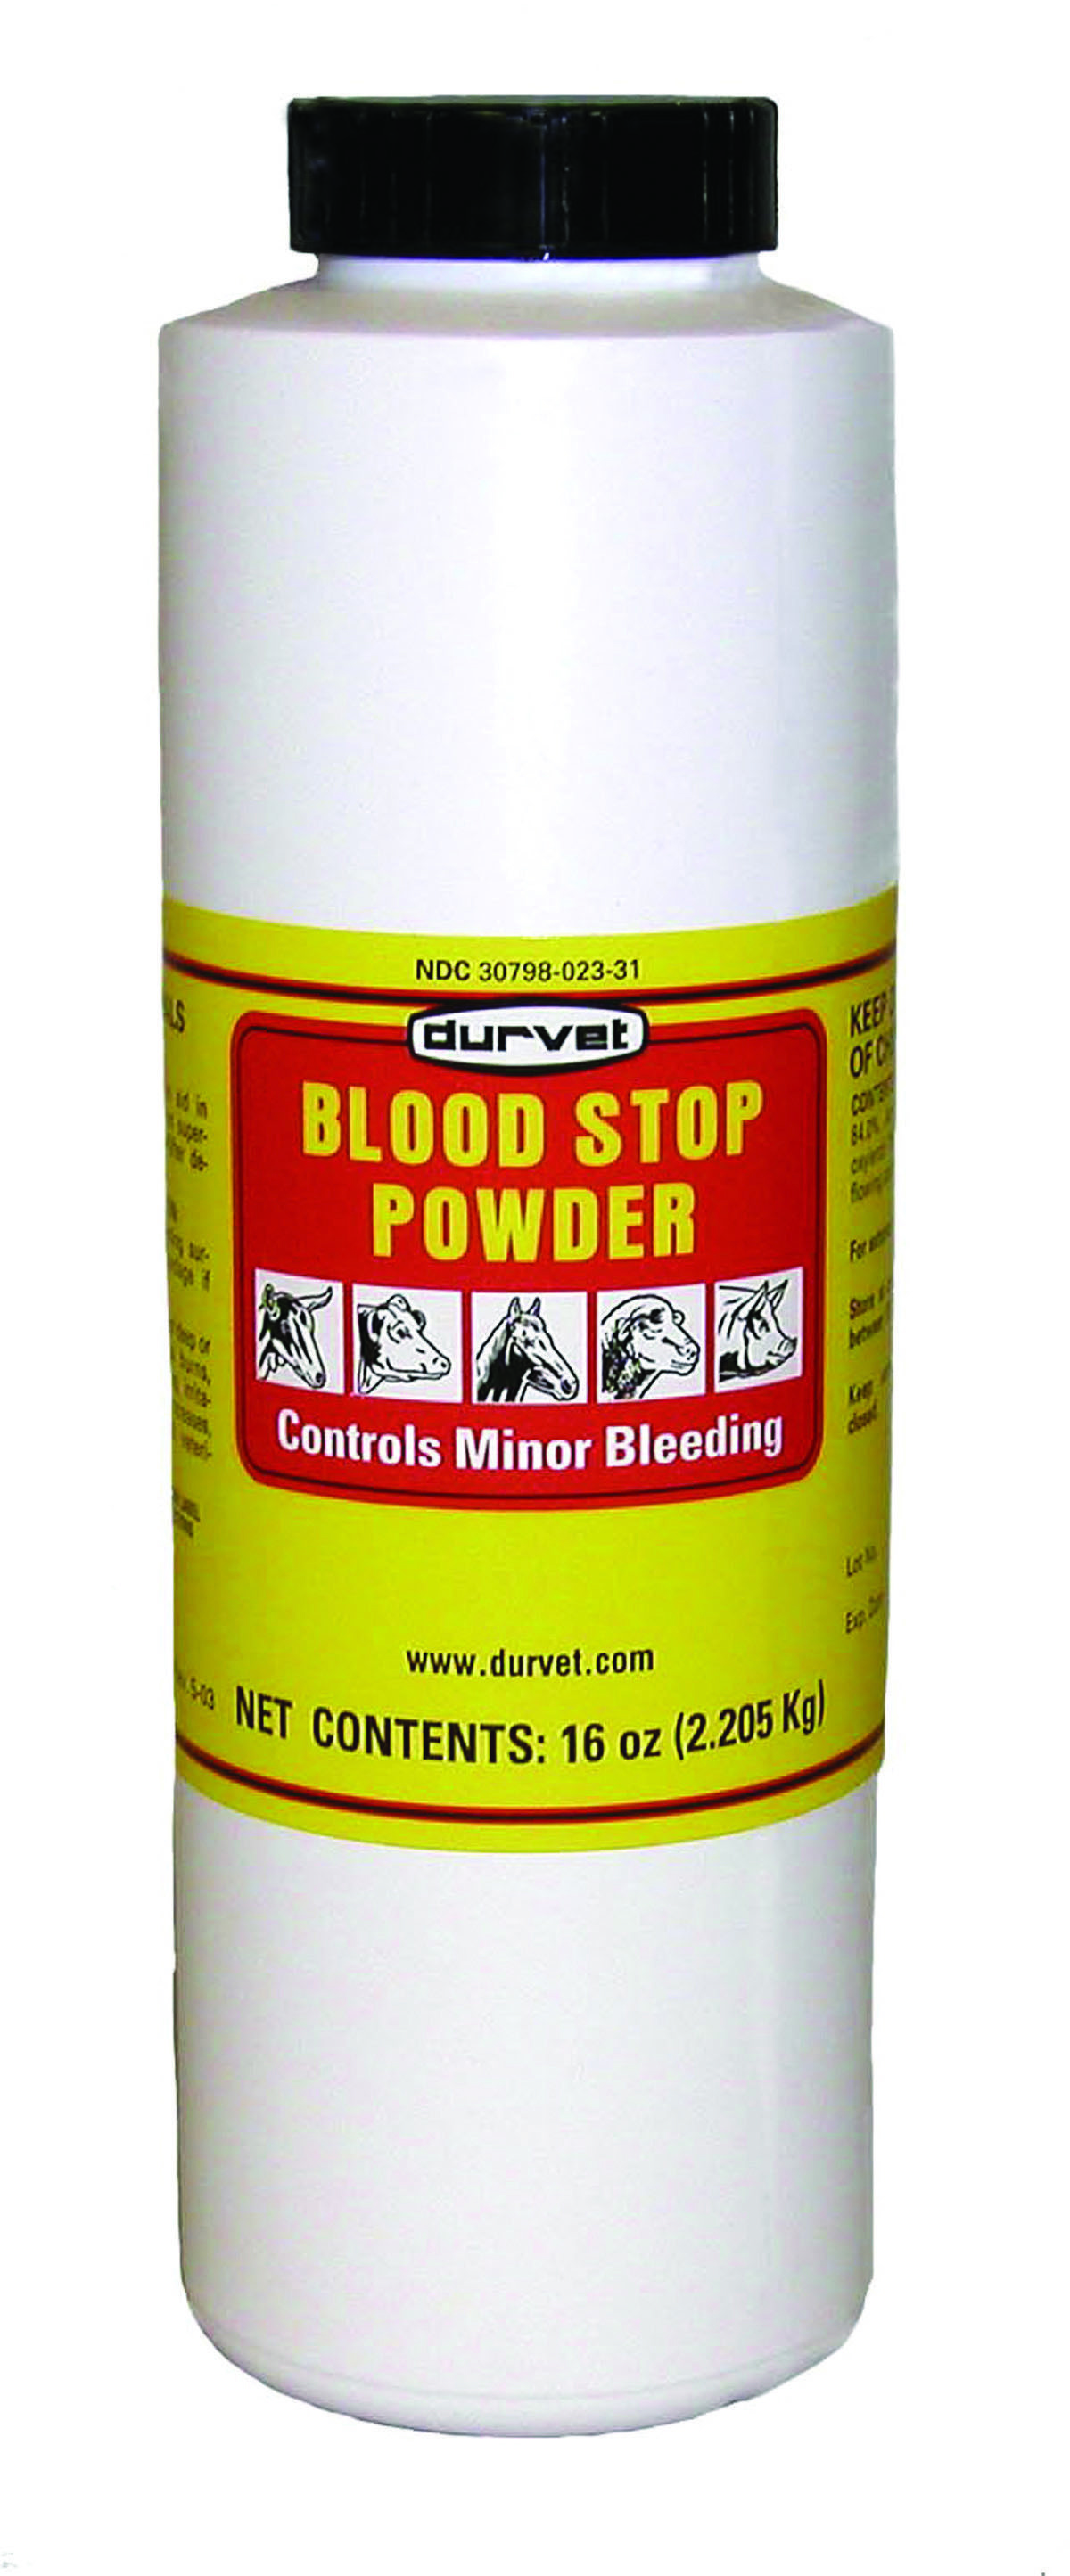 Blood Stop Powder  16 oz